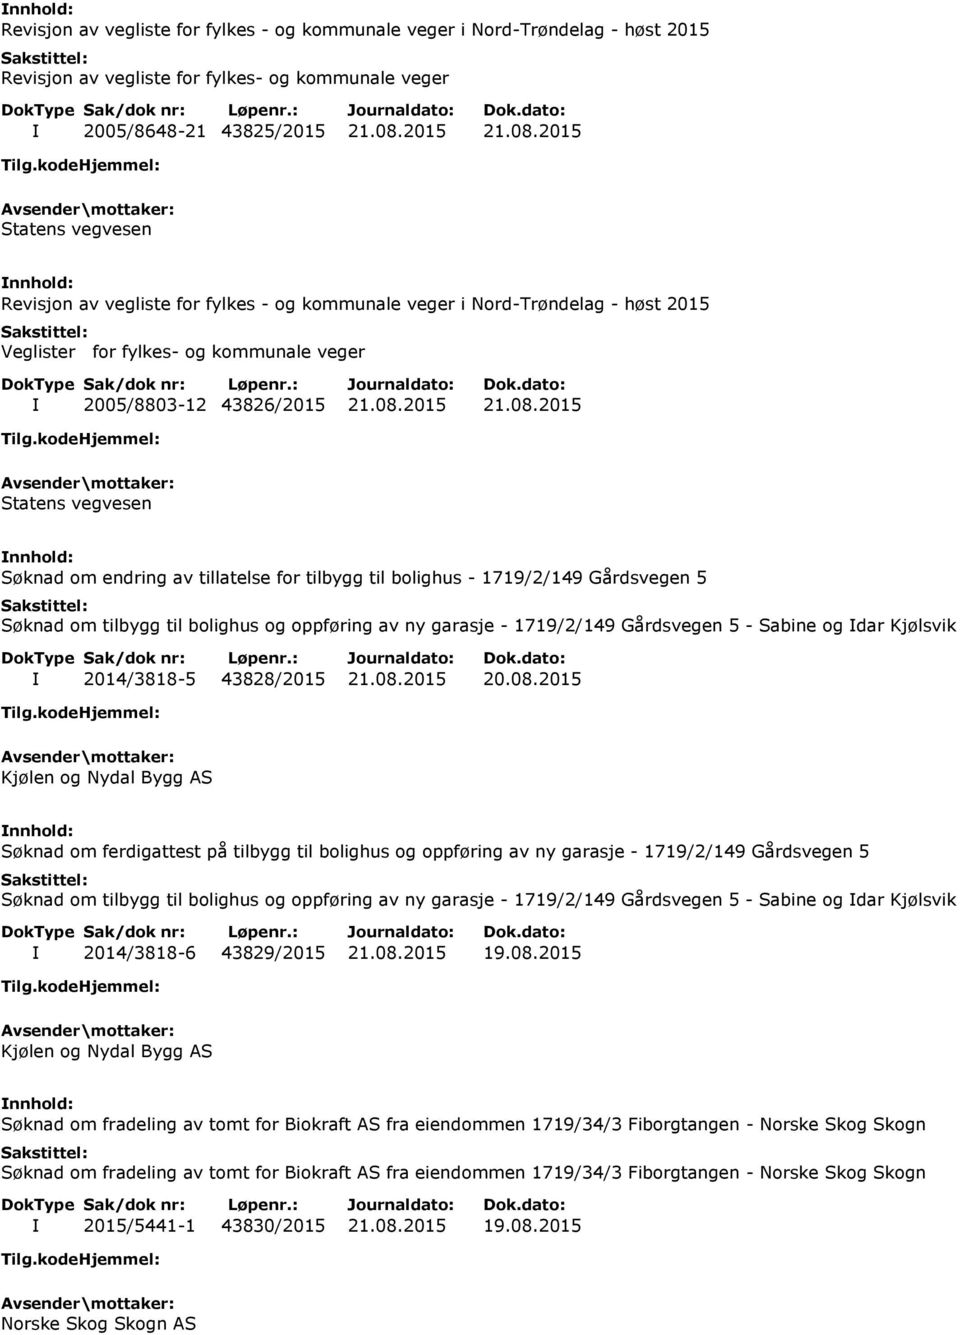 2015 Statens vegvesen Revisjon av vegliste for fylkes - og kommunale veger i Nord-Trøndelag - høst 2015 Veglister for fylkes- og kommunale veger I 2005/8803-12 43826/2015 Statens vegvesen Søknad om